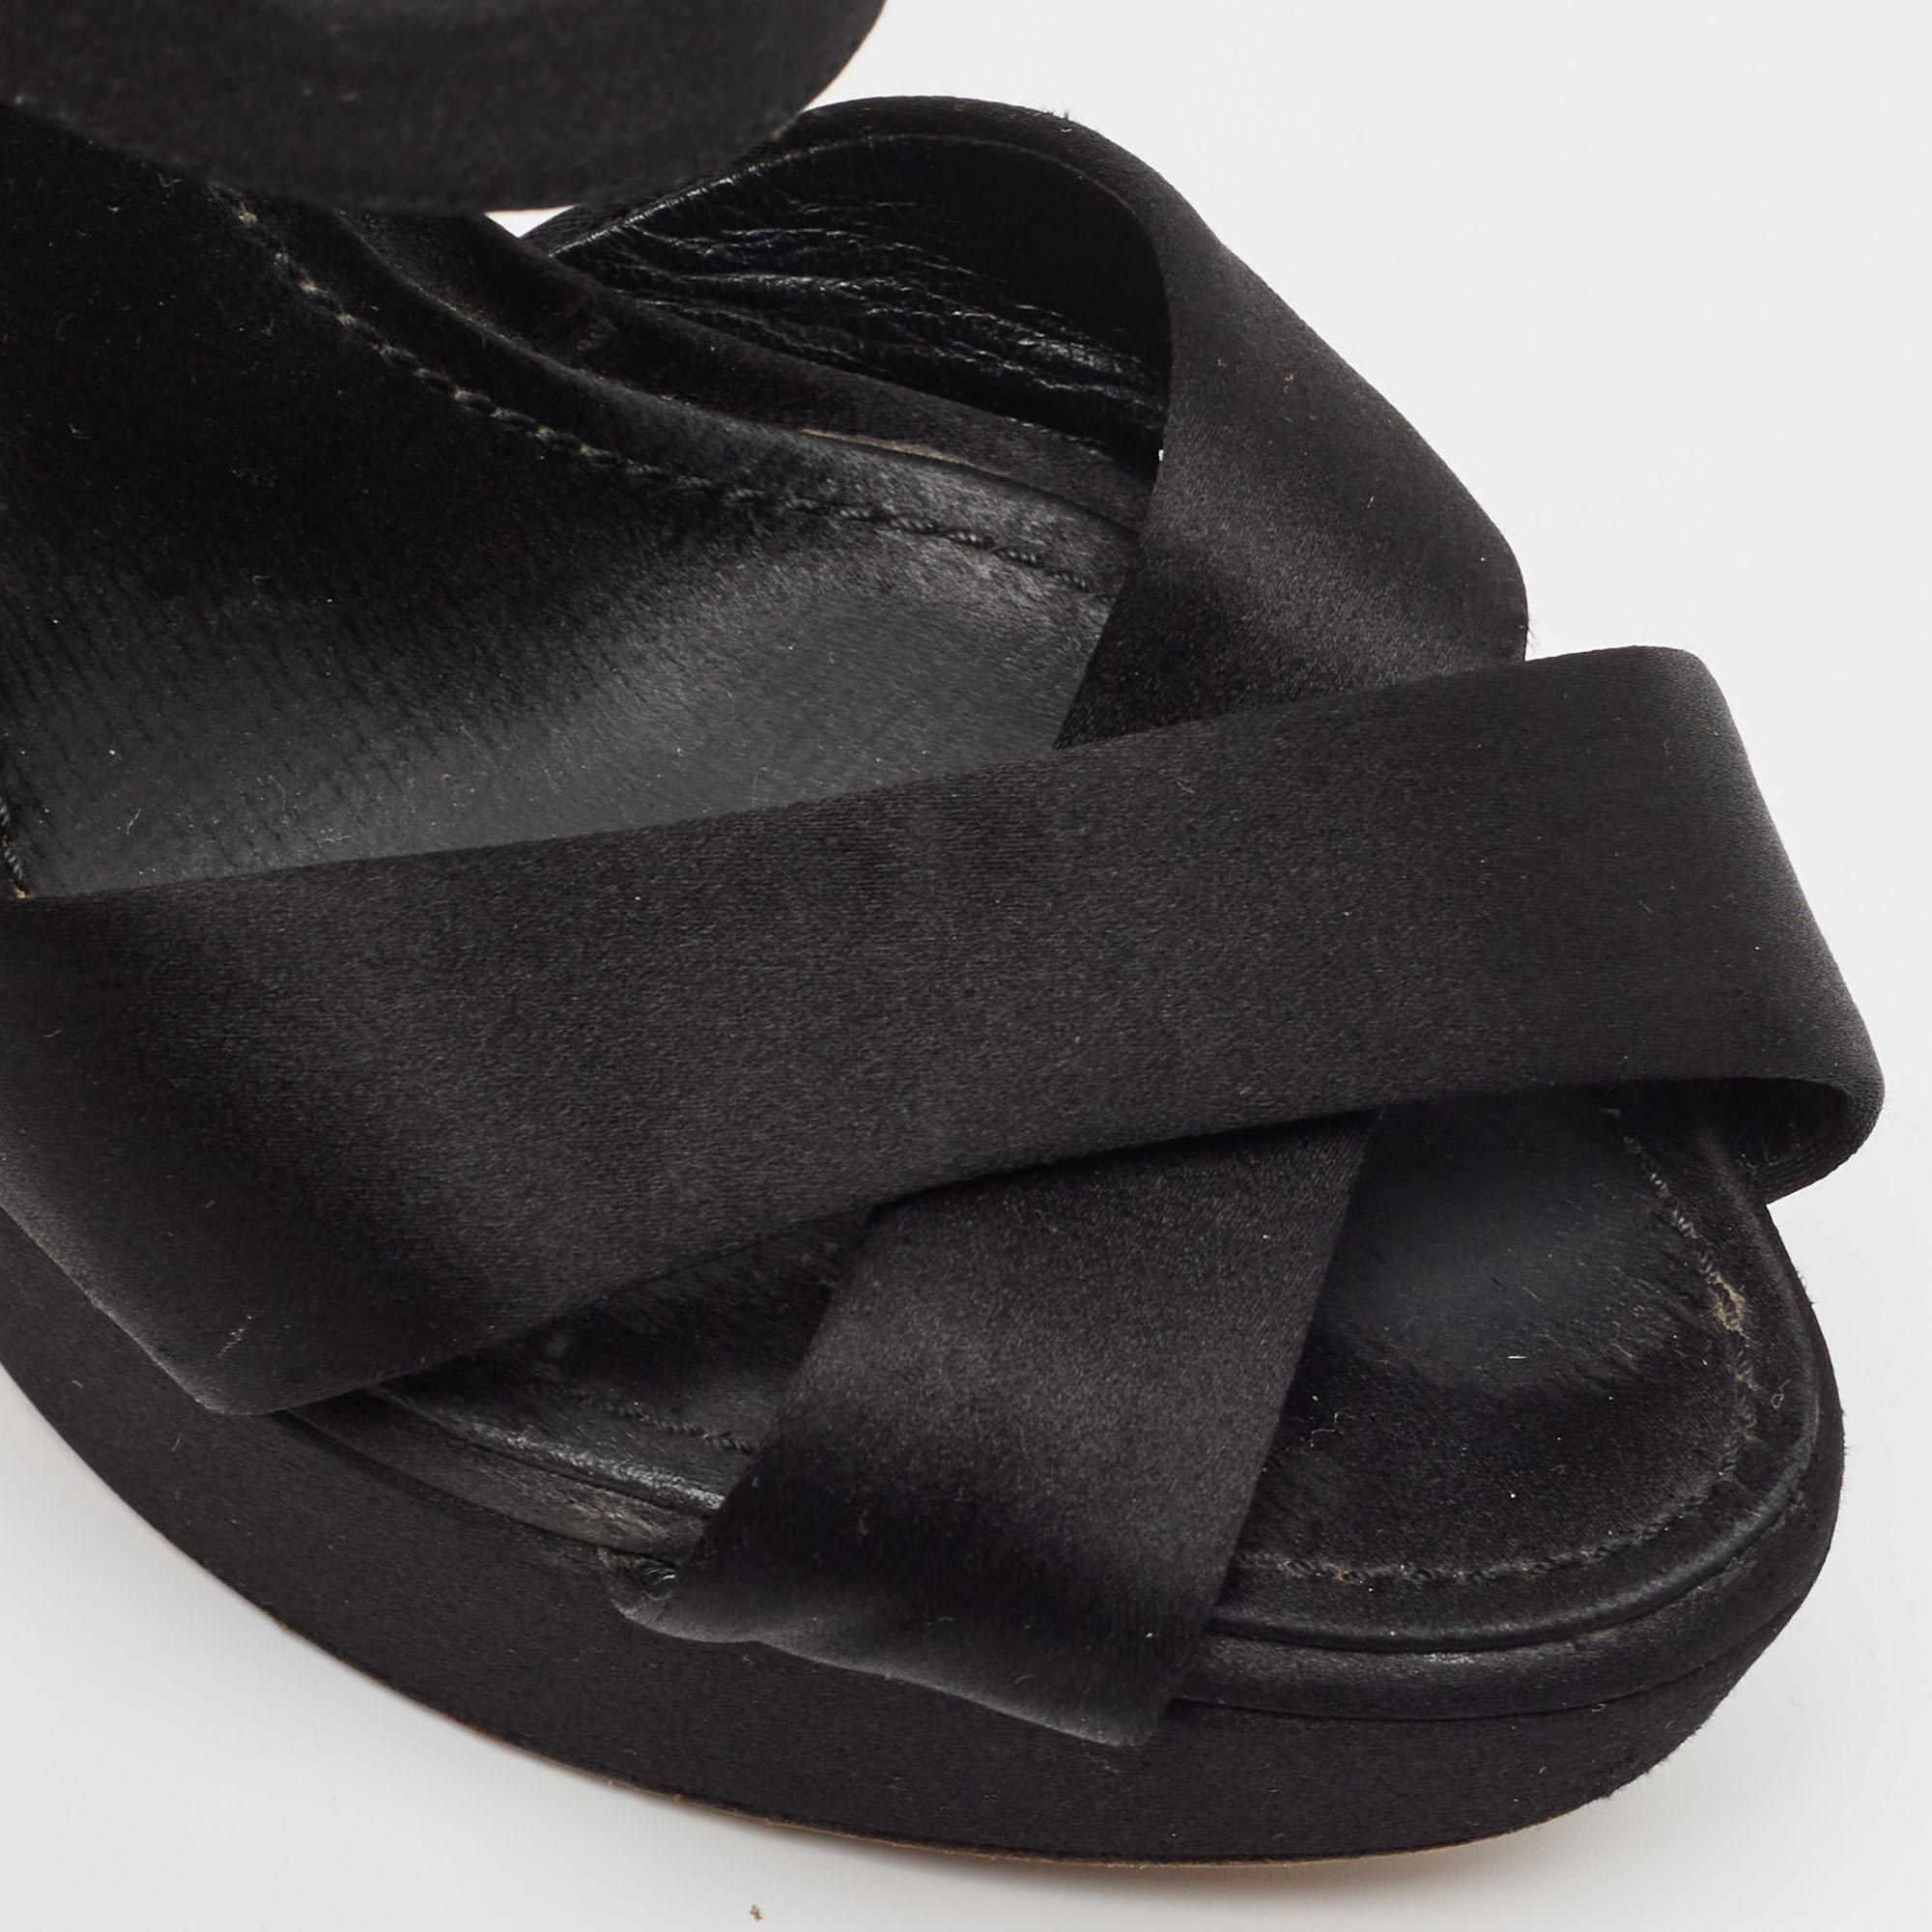 Dior Black Satin Crystal Embellished Cannage Heel Platform Ankle Strap Sandals Size 38